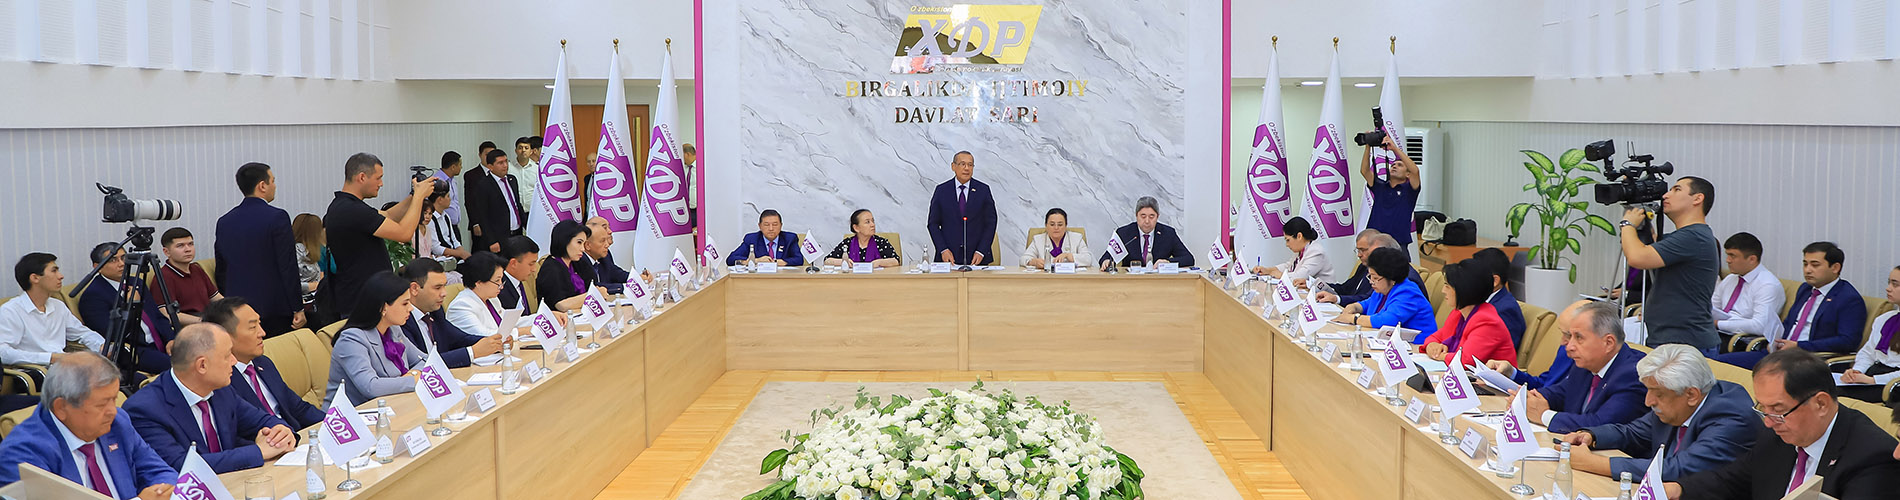 Состоялся IX Пленум Центрального Совета партии